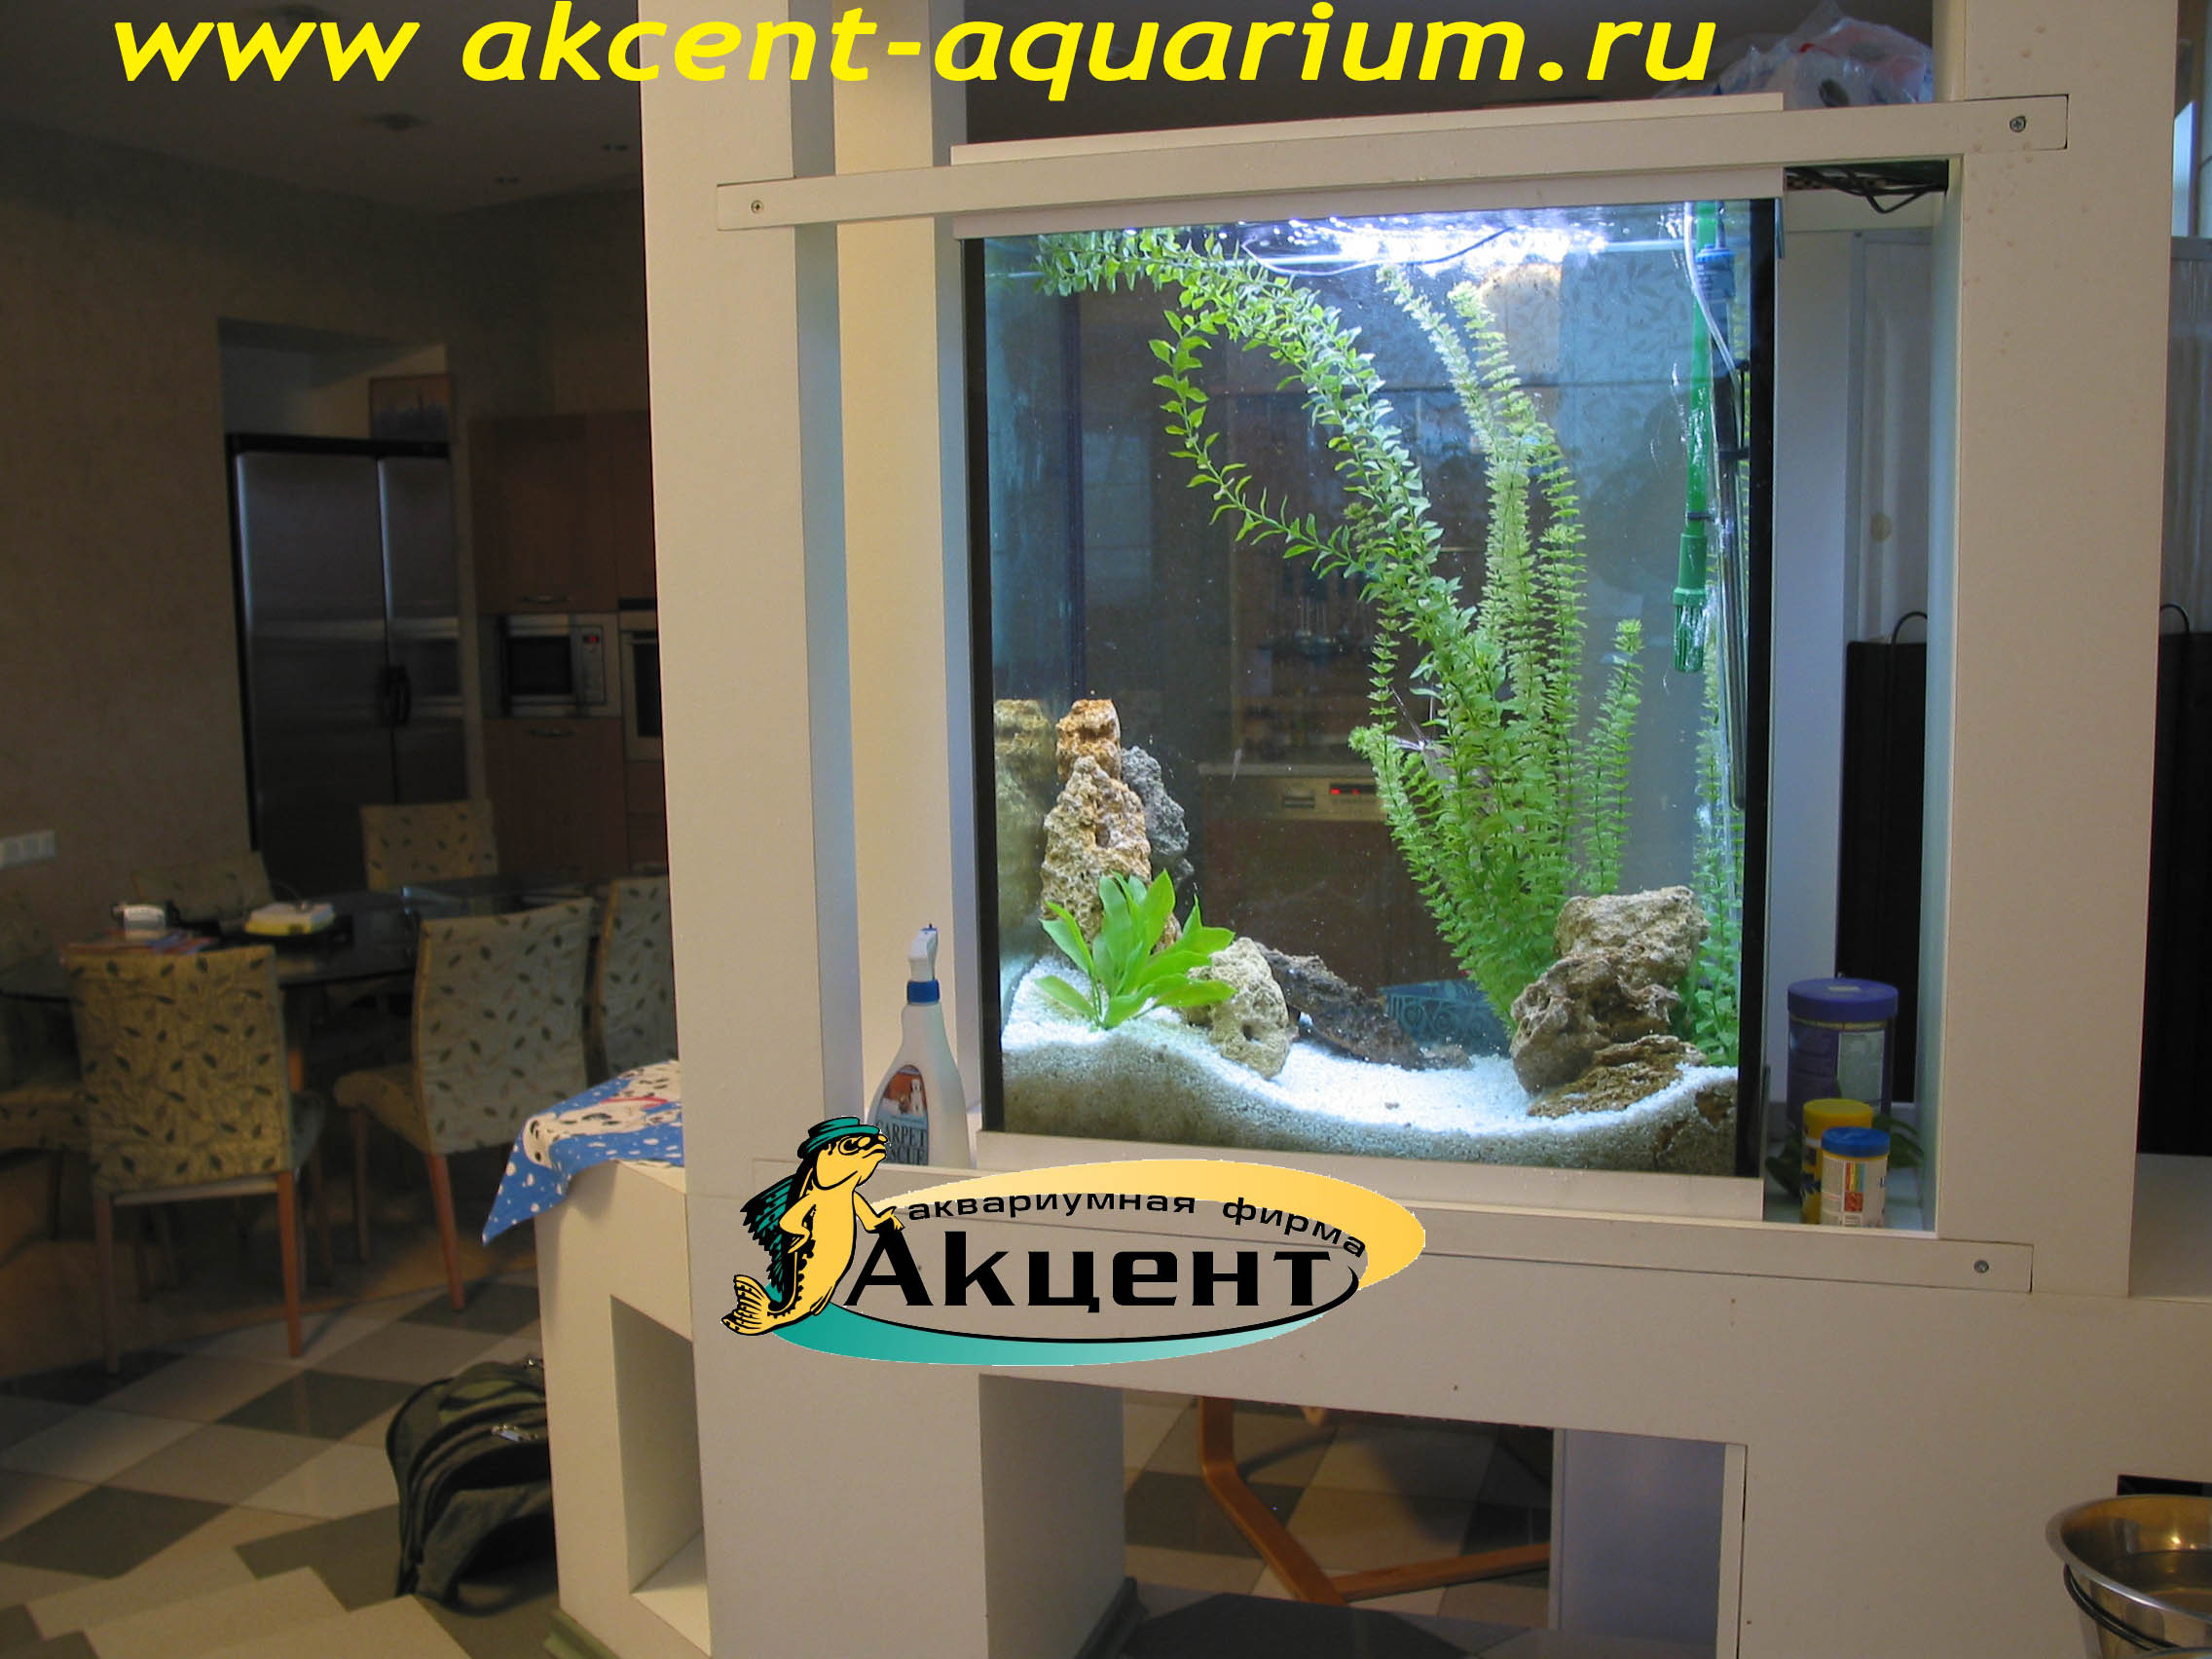 Акцент-Аквариум, аквариум 250 литров просмотровый, вид со стороны комнаты